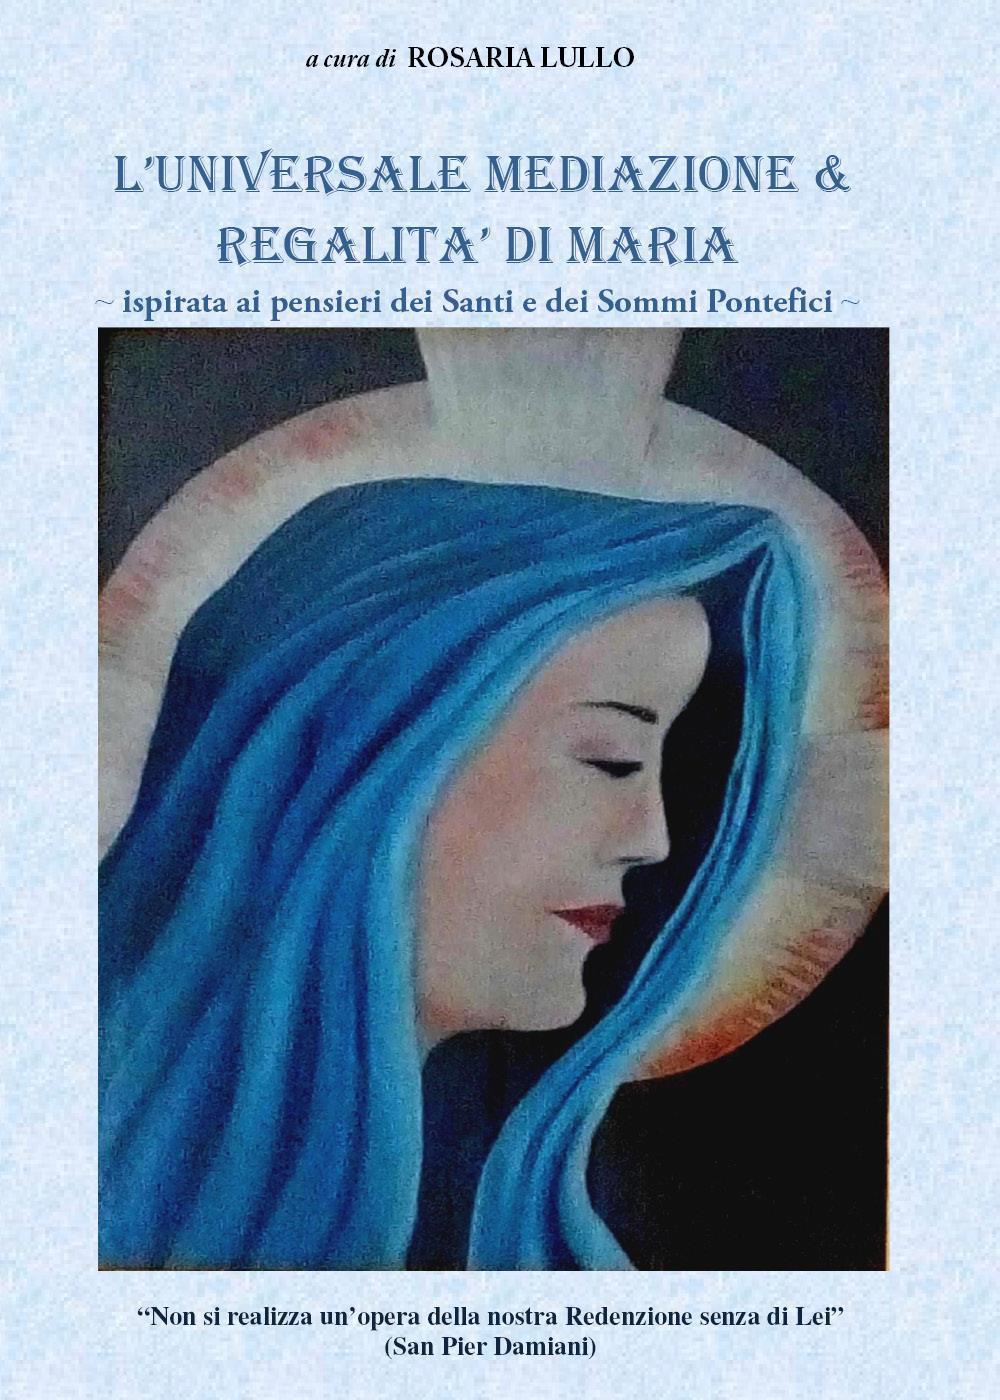 L'universale meditazione & regalità di Maria